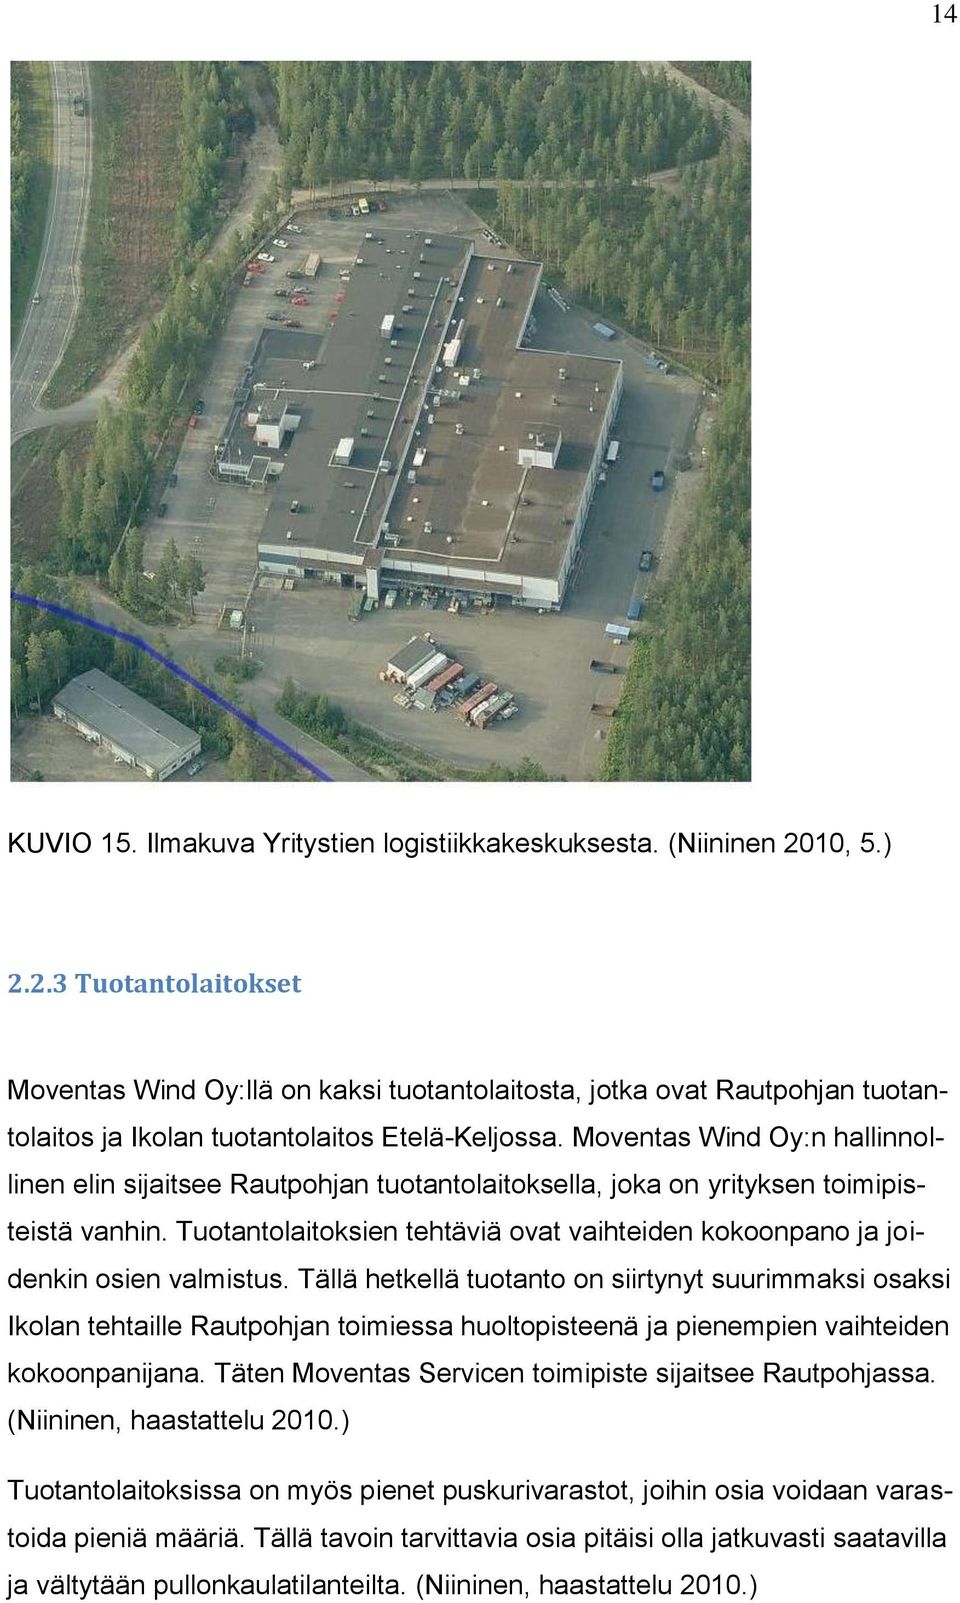 Moventas Wind Oy:n hallinnollinen elin sijaitsee Rautpohjan tuotantolaitoksella, joka on yrityksen toimipisteistä vanhin.